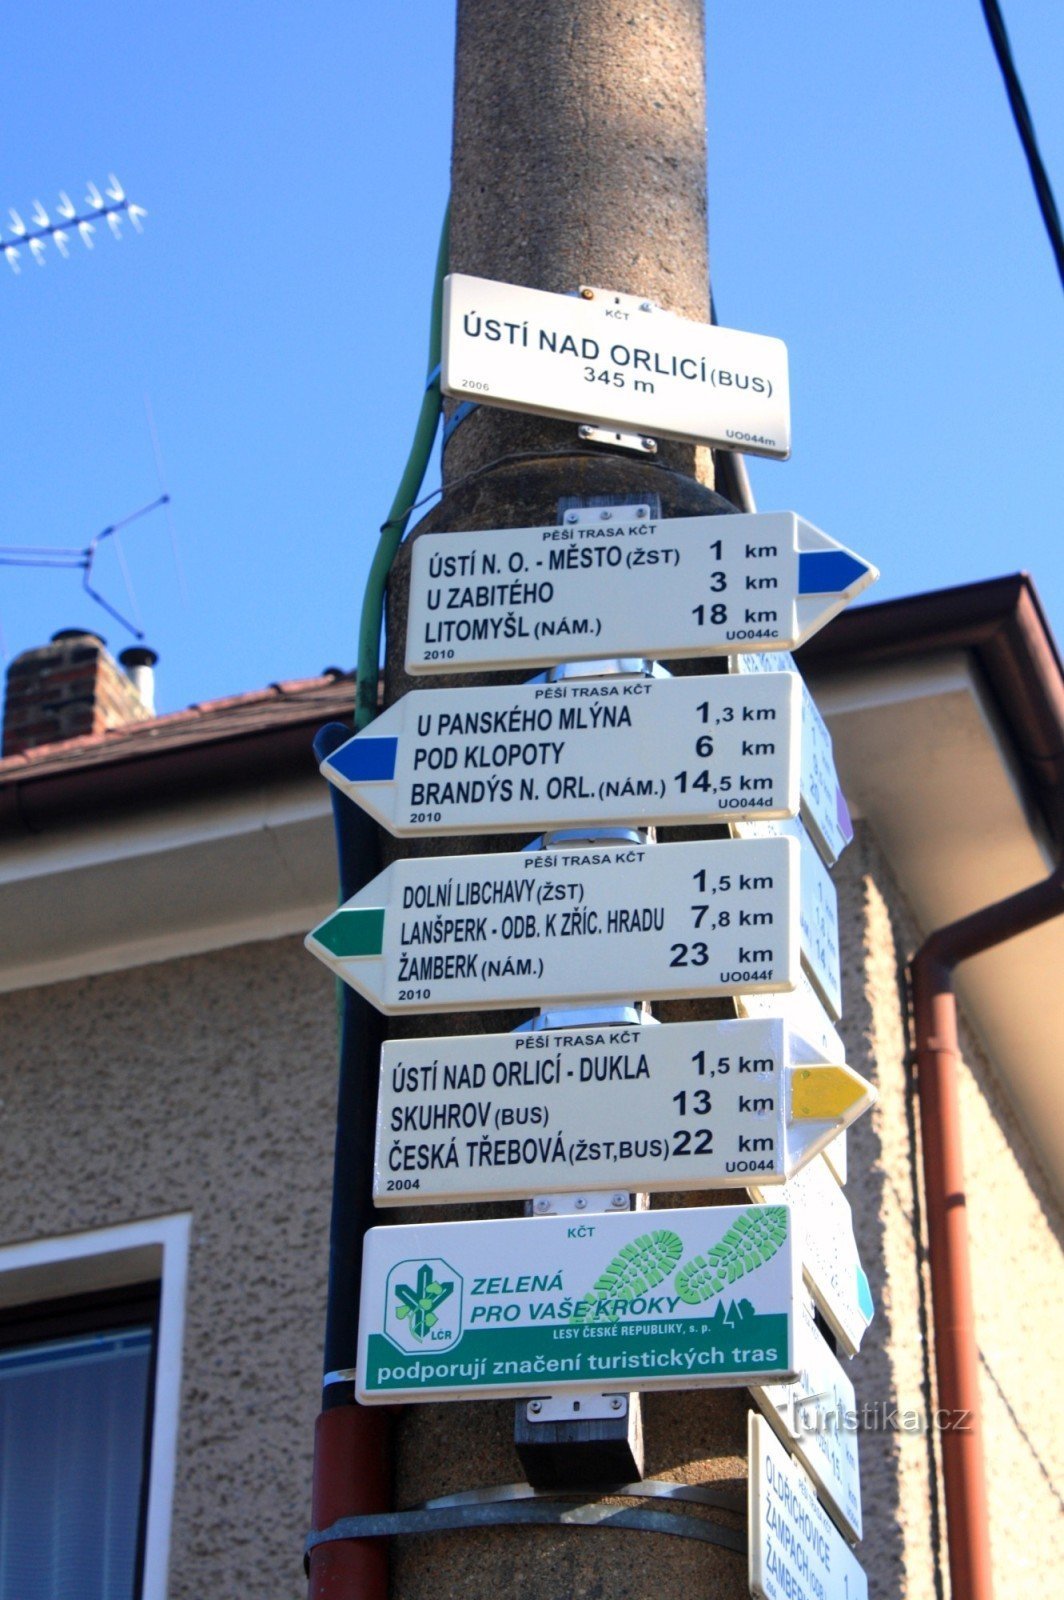 Ústí nad Orlicí - the main tourist signpost